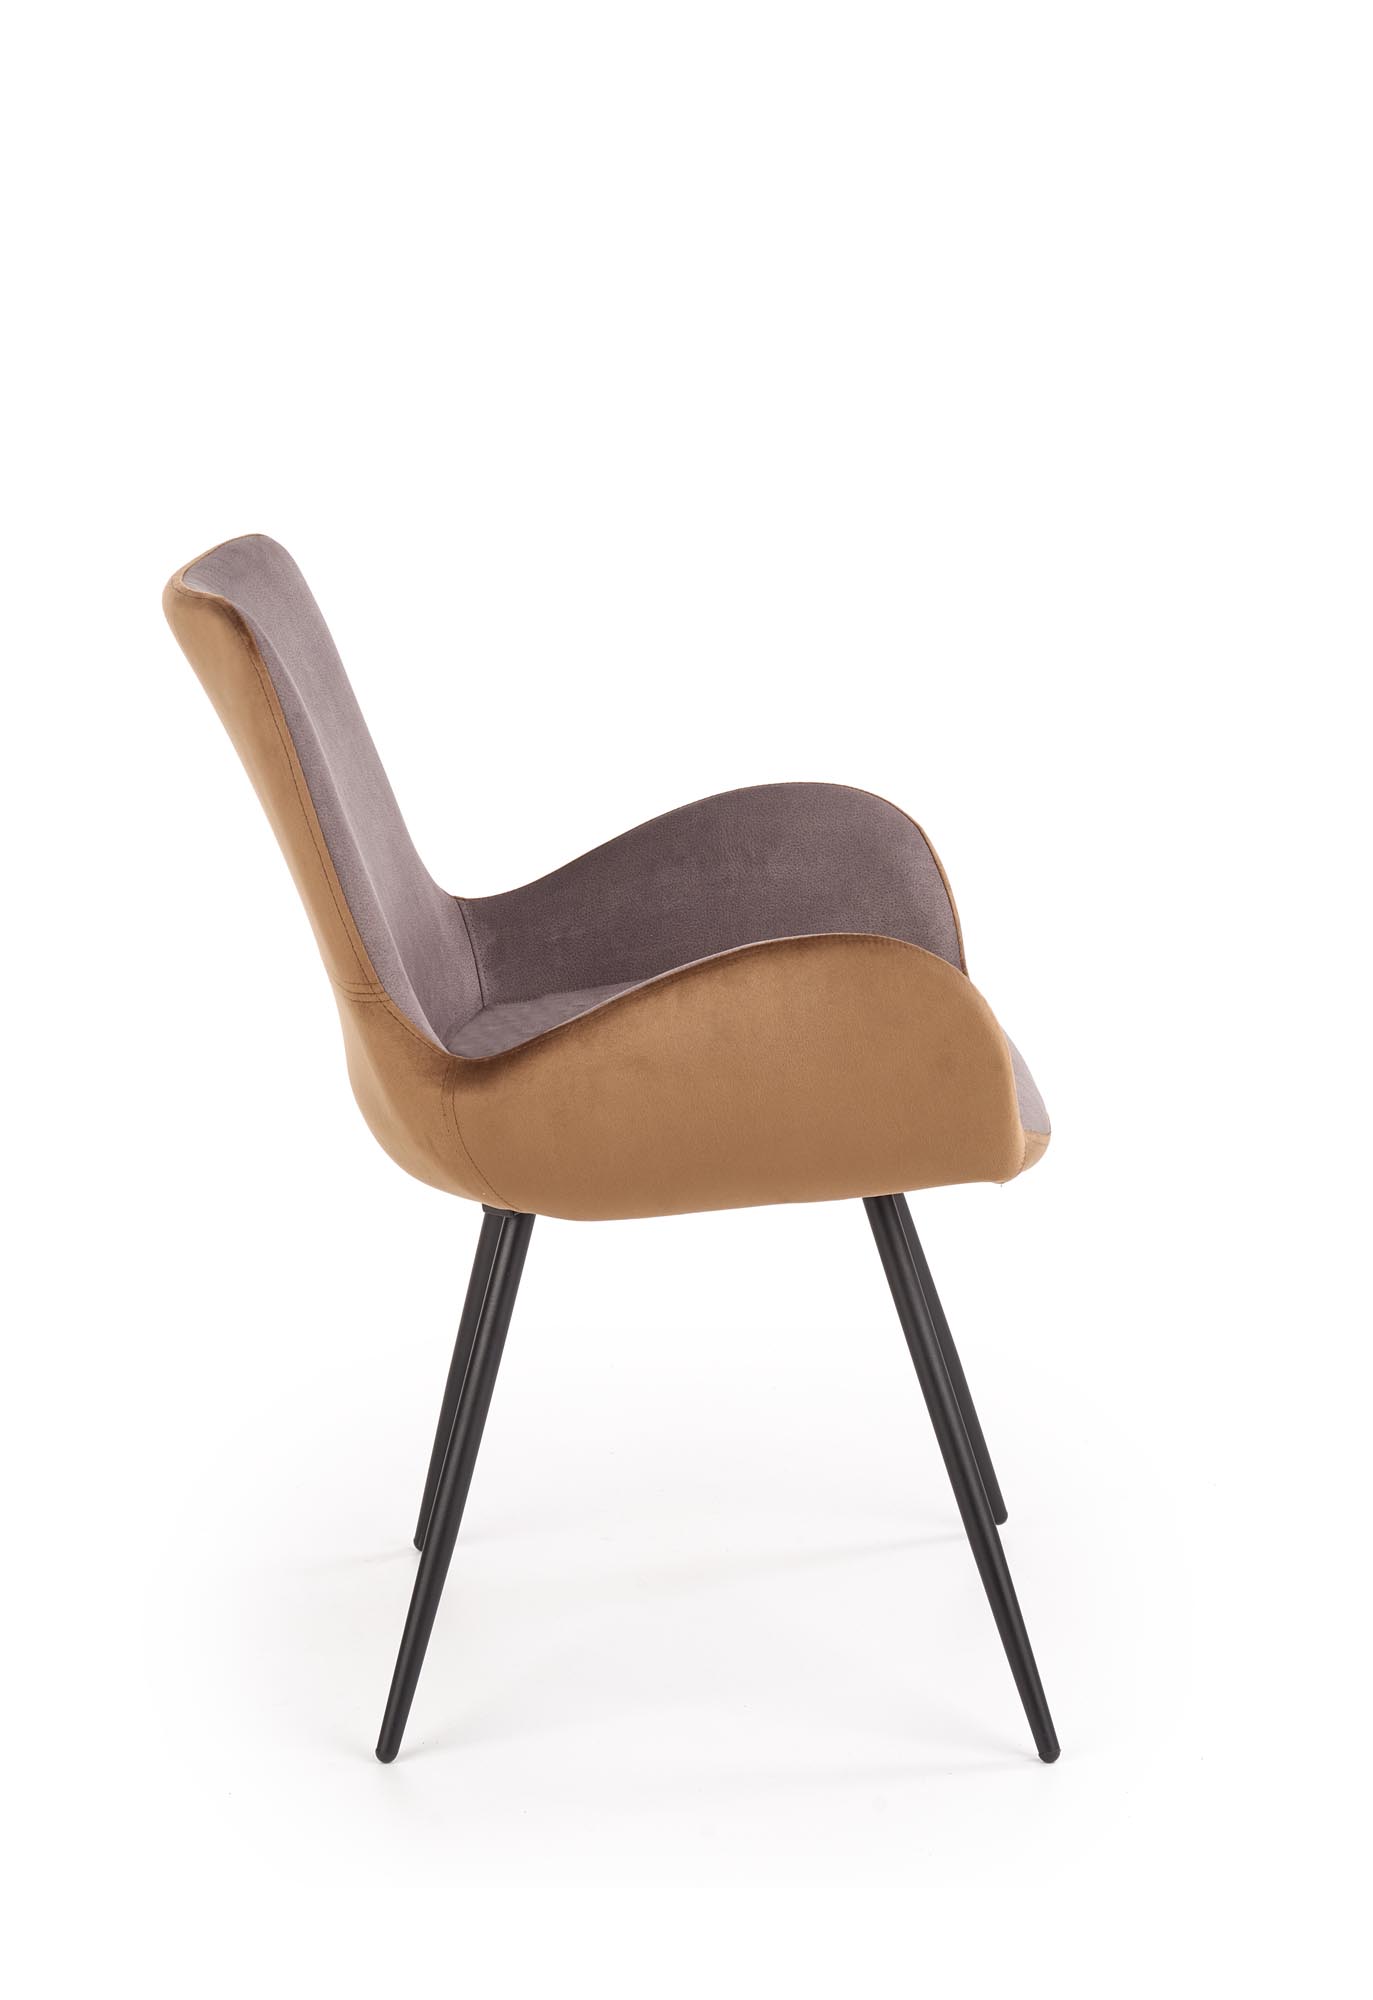 Krzesło tapicerowane K392 - popielaty / brązowy krzesło tapicerowane k392 - popielaty / brązowy